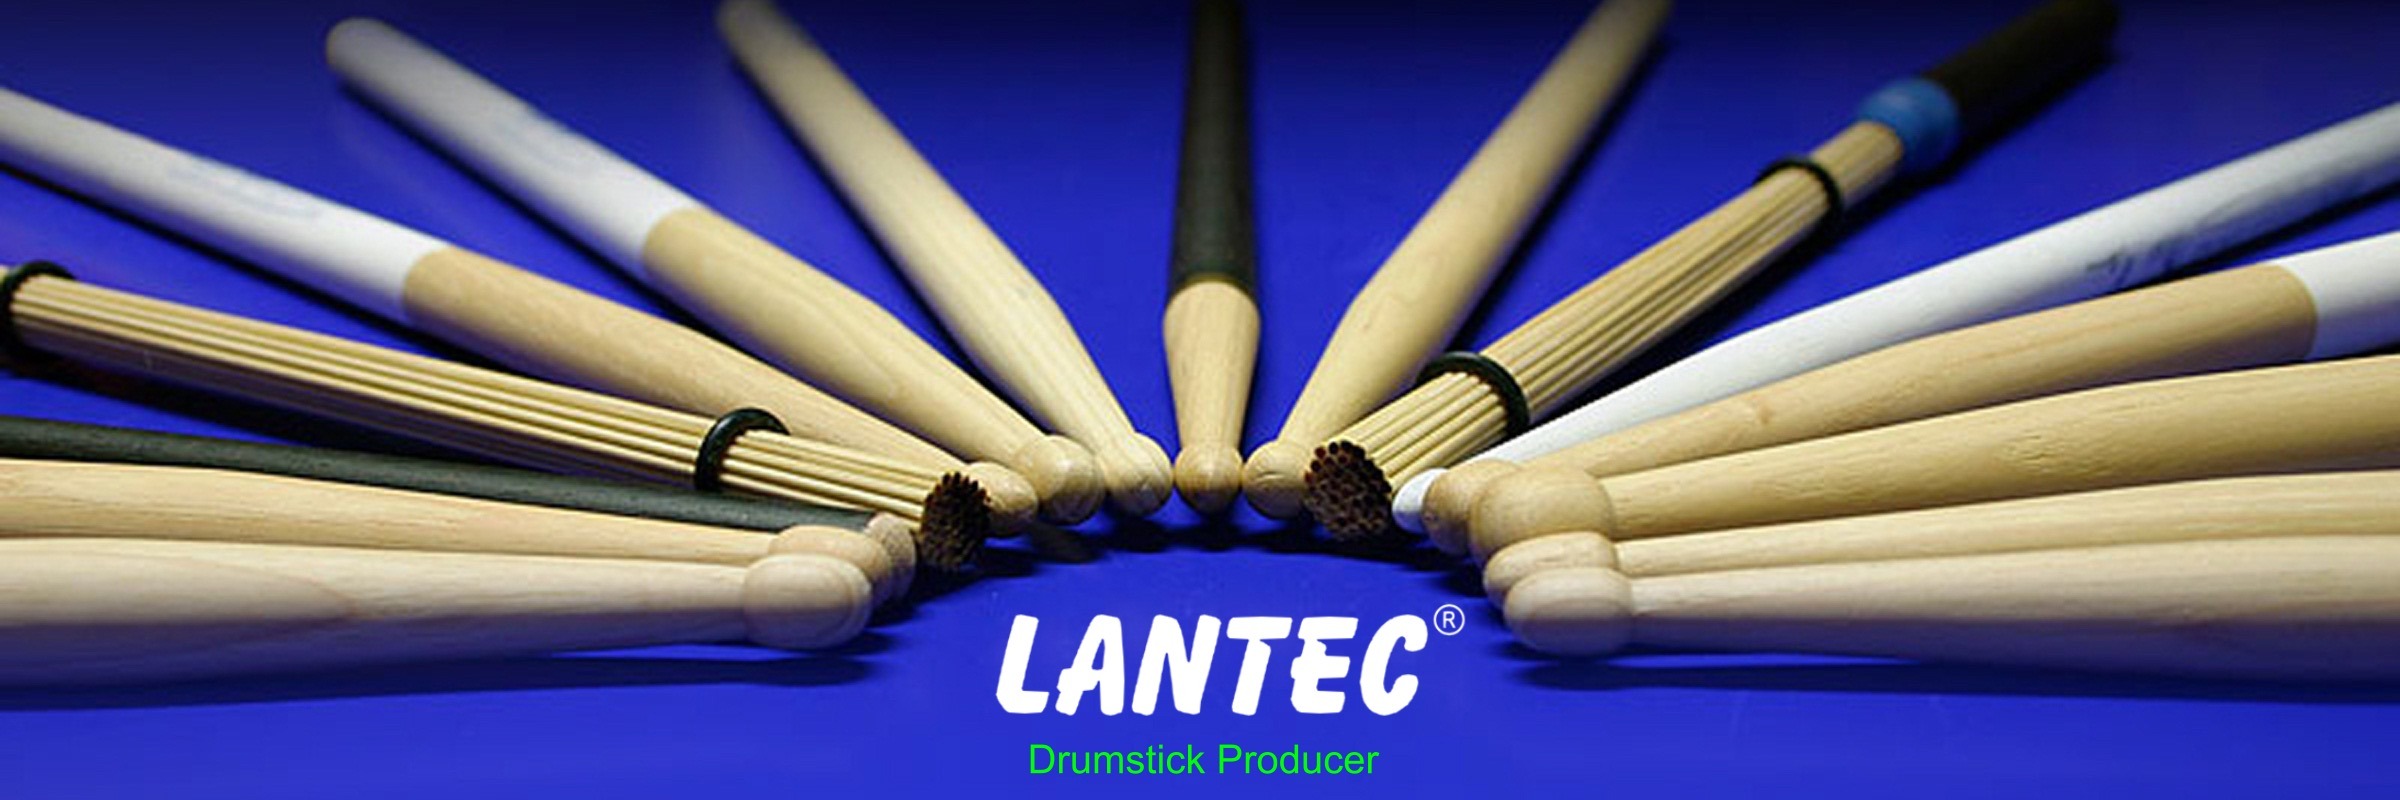 Lantec, nuova distribuzione